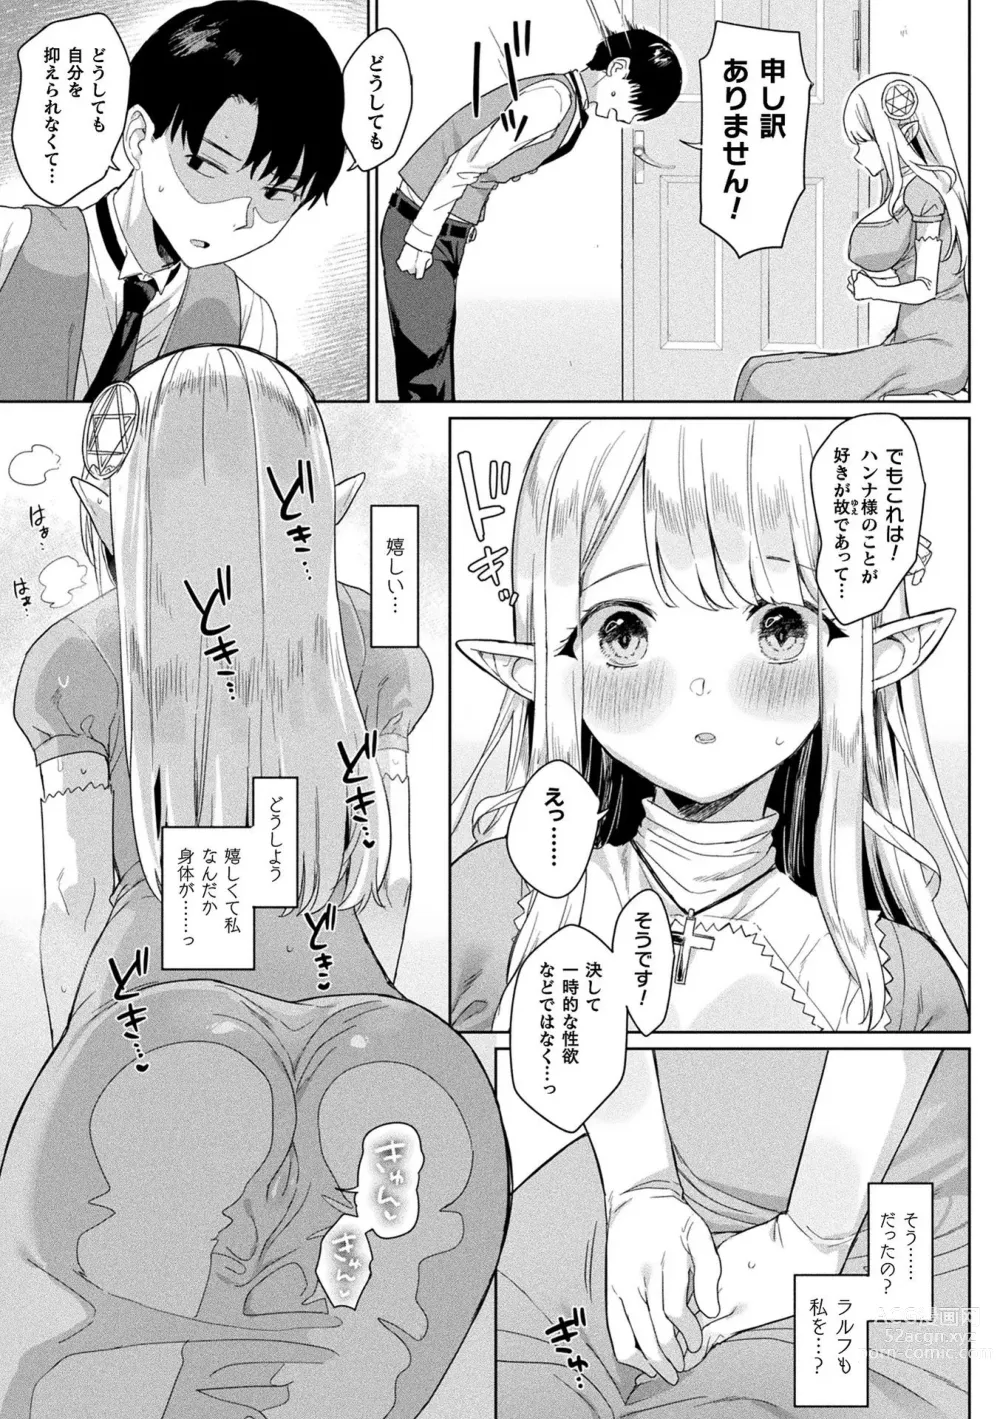 Page 193 of manga Neneki Shoujo -Anata o Tabetai-